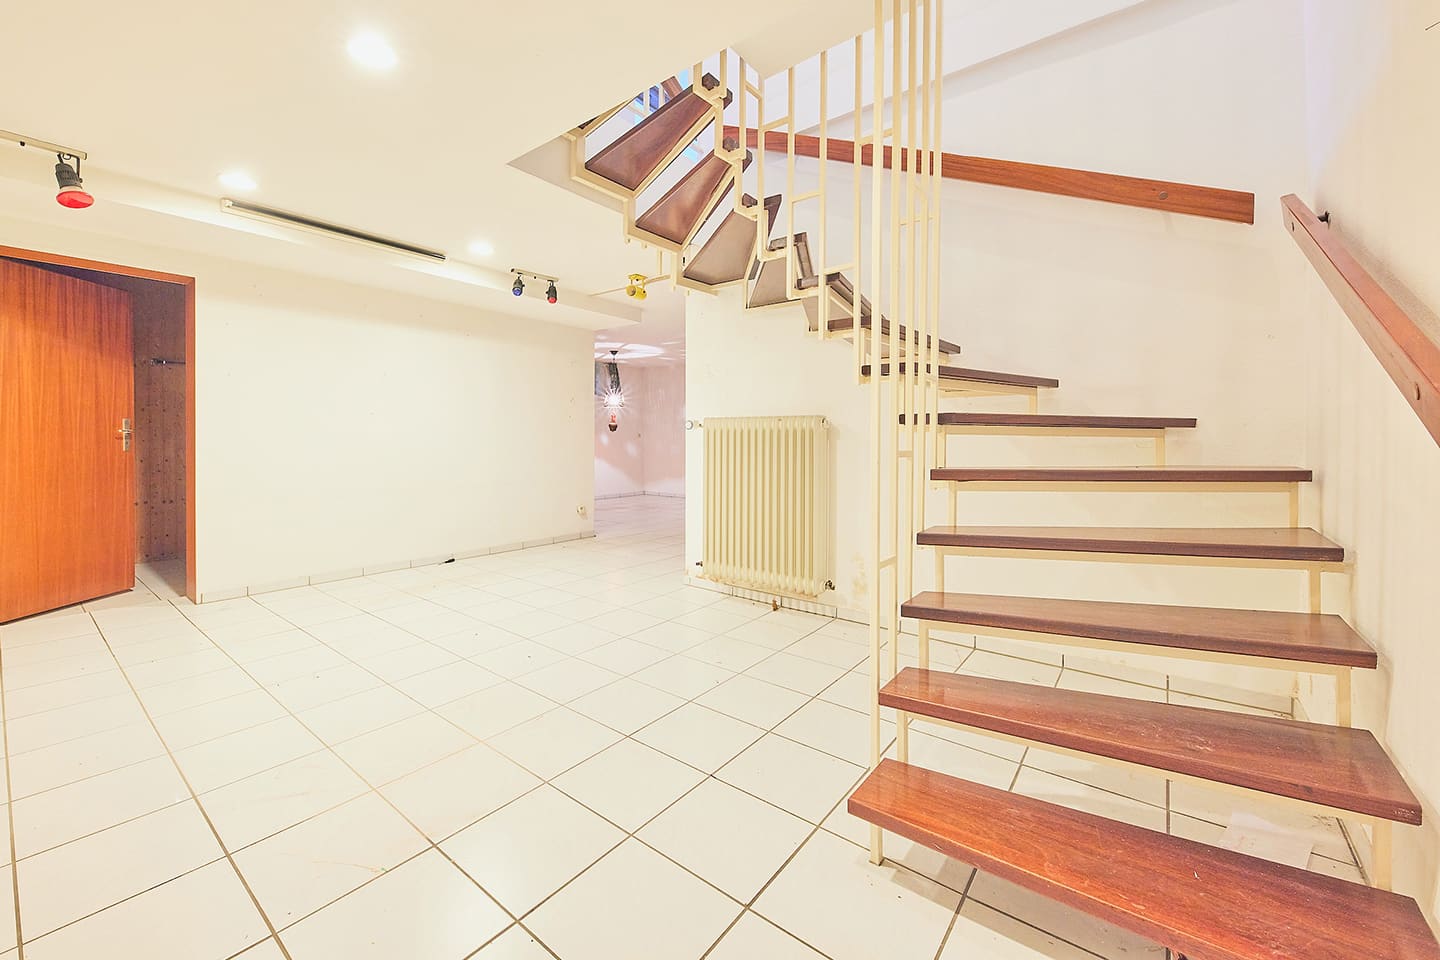 Maisonette-Wohnung Senefelderstraße: Treppen zum Untergeschoss